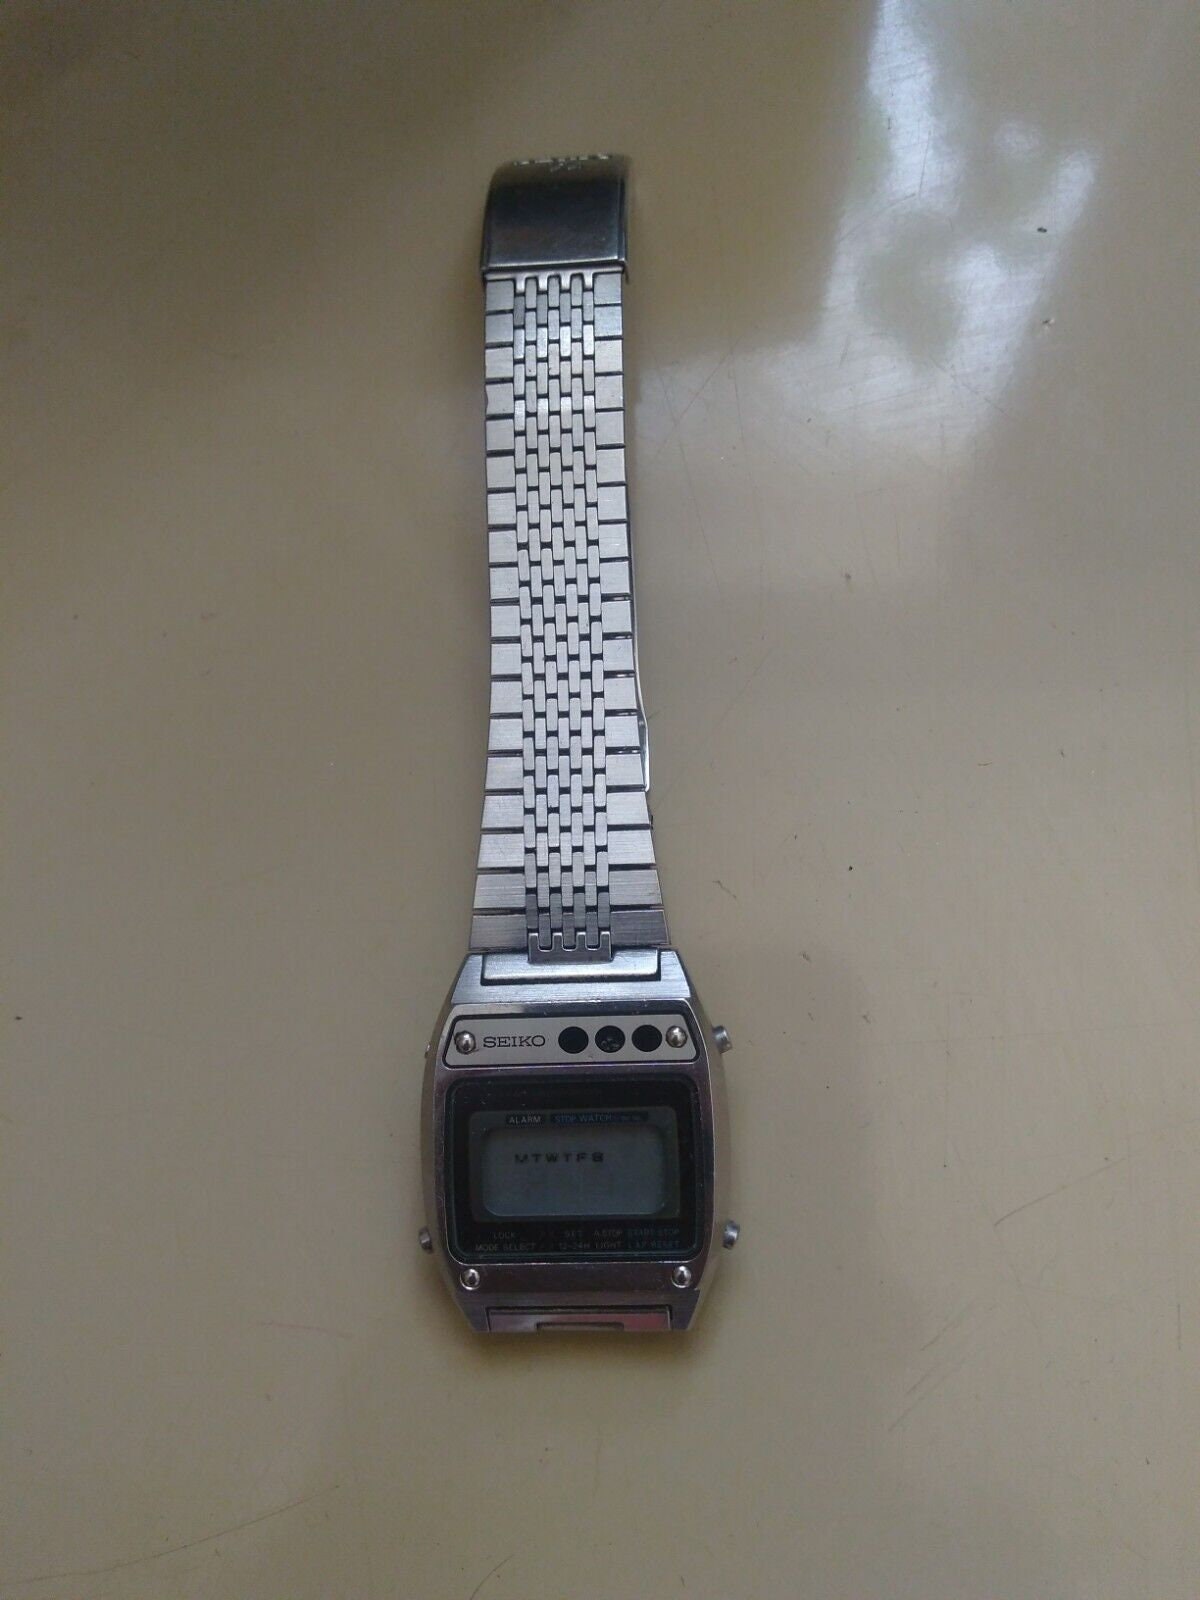 Seiko Vintage Digital Watches - Etsy